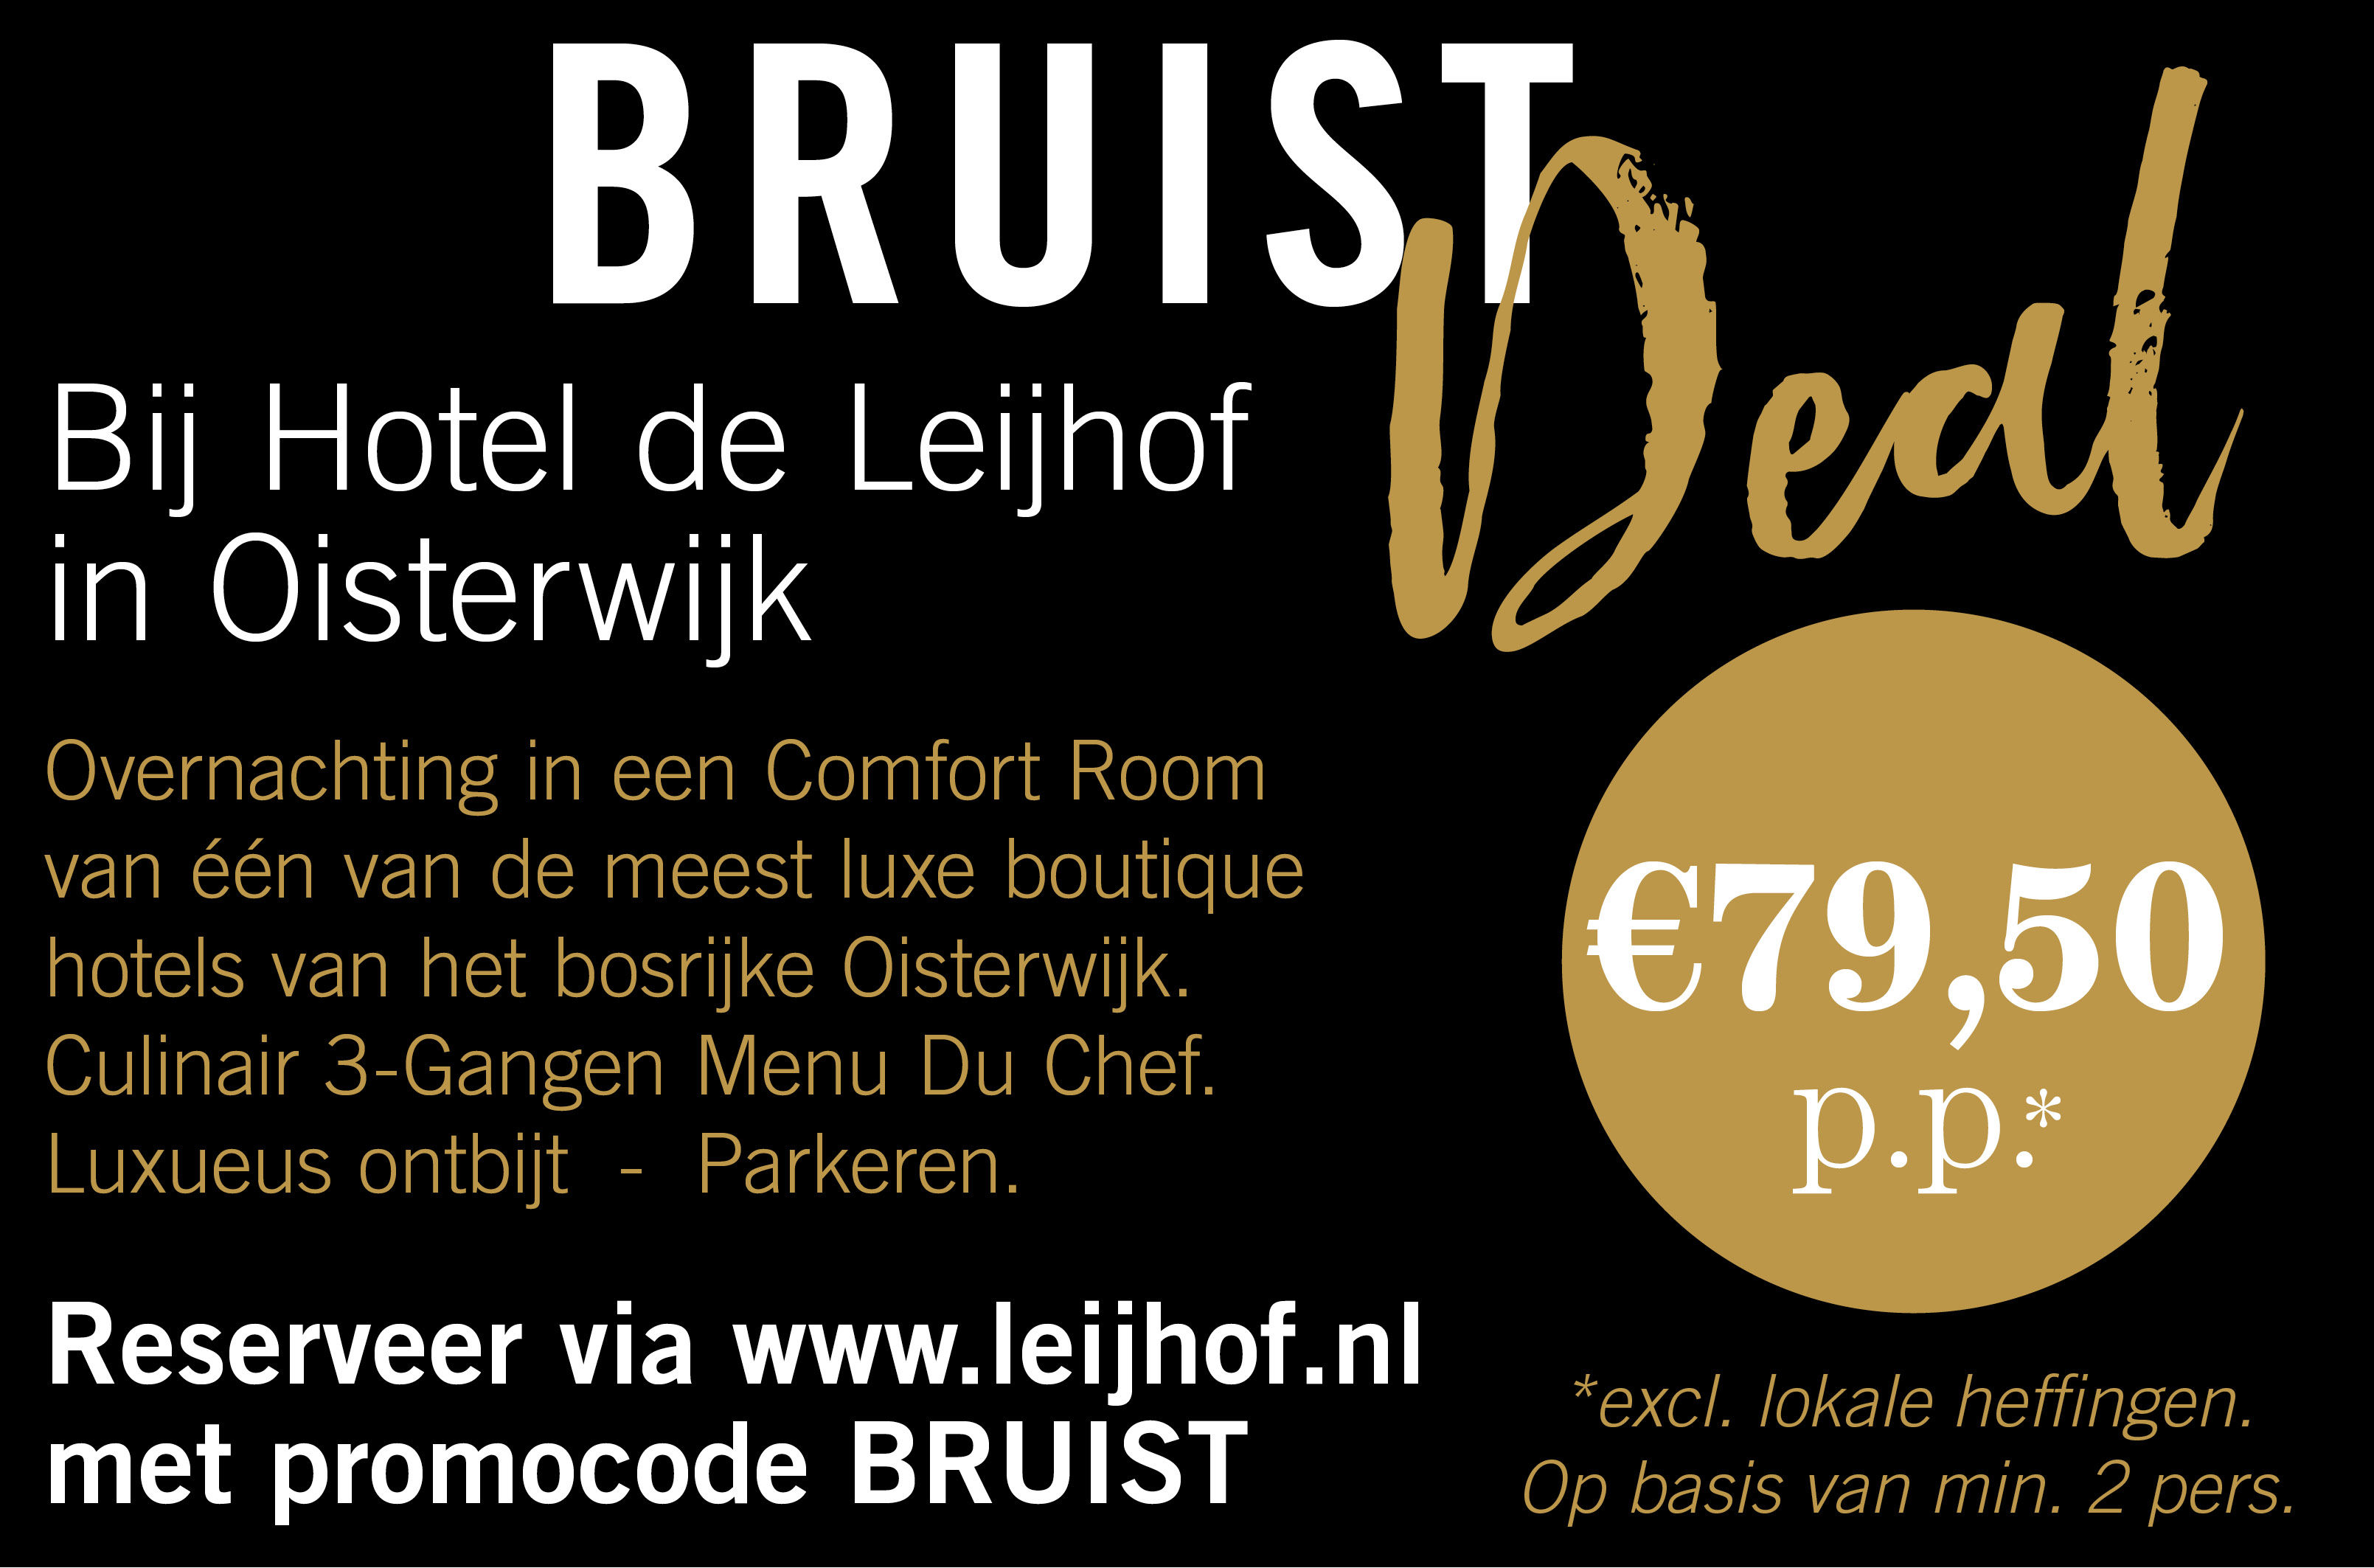 Verblijf in Hotel de Leijhof Oisterwijk met deze Bruist Deal.